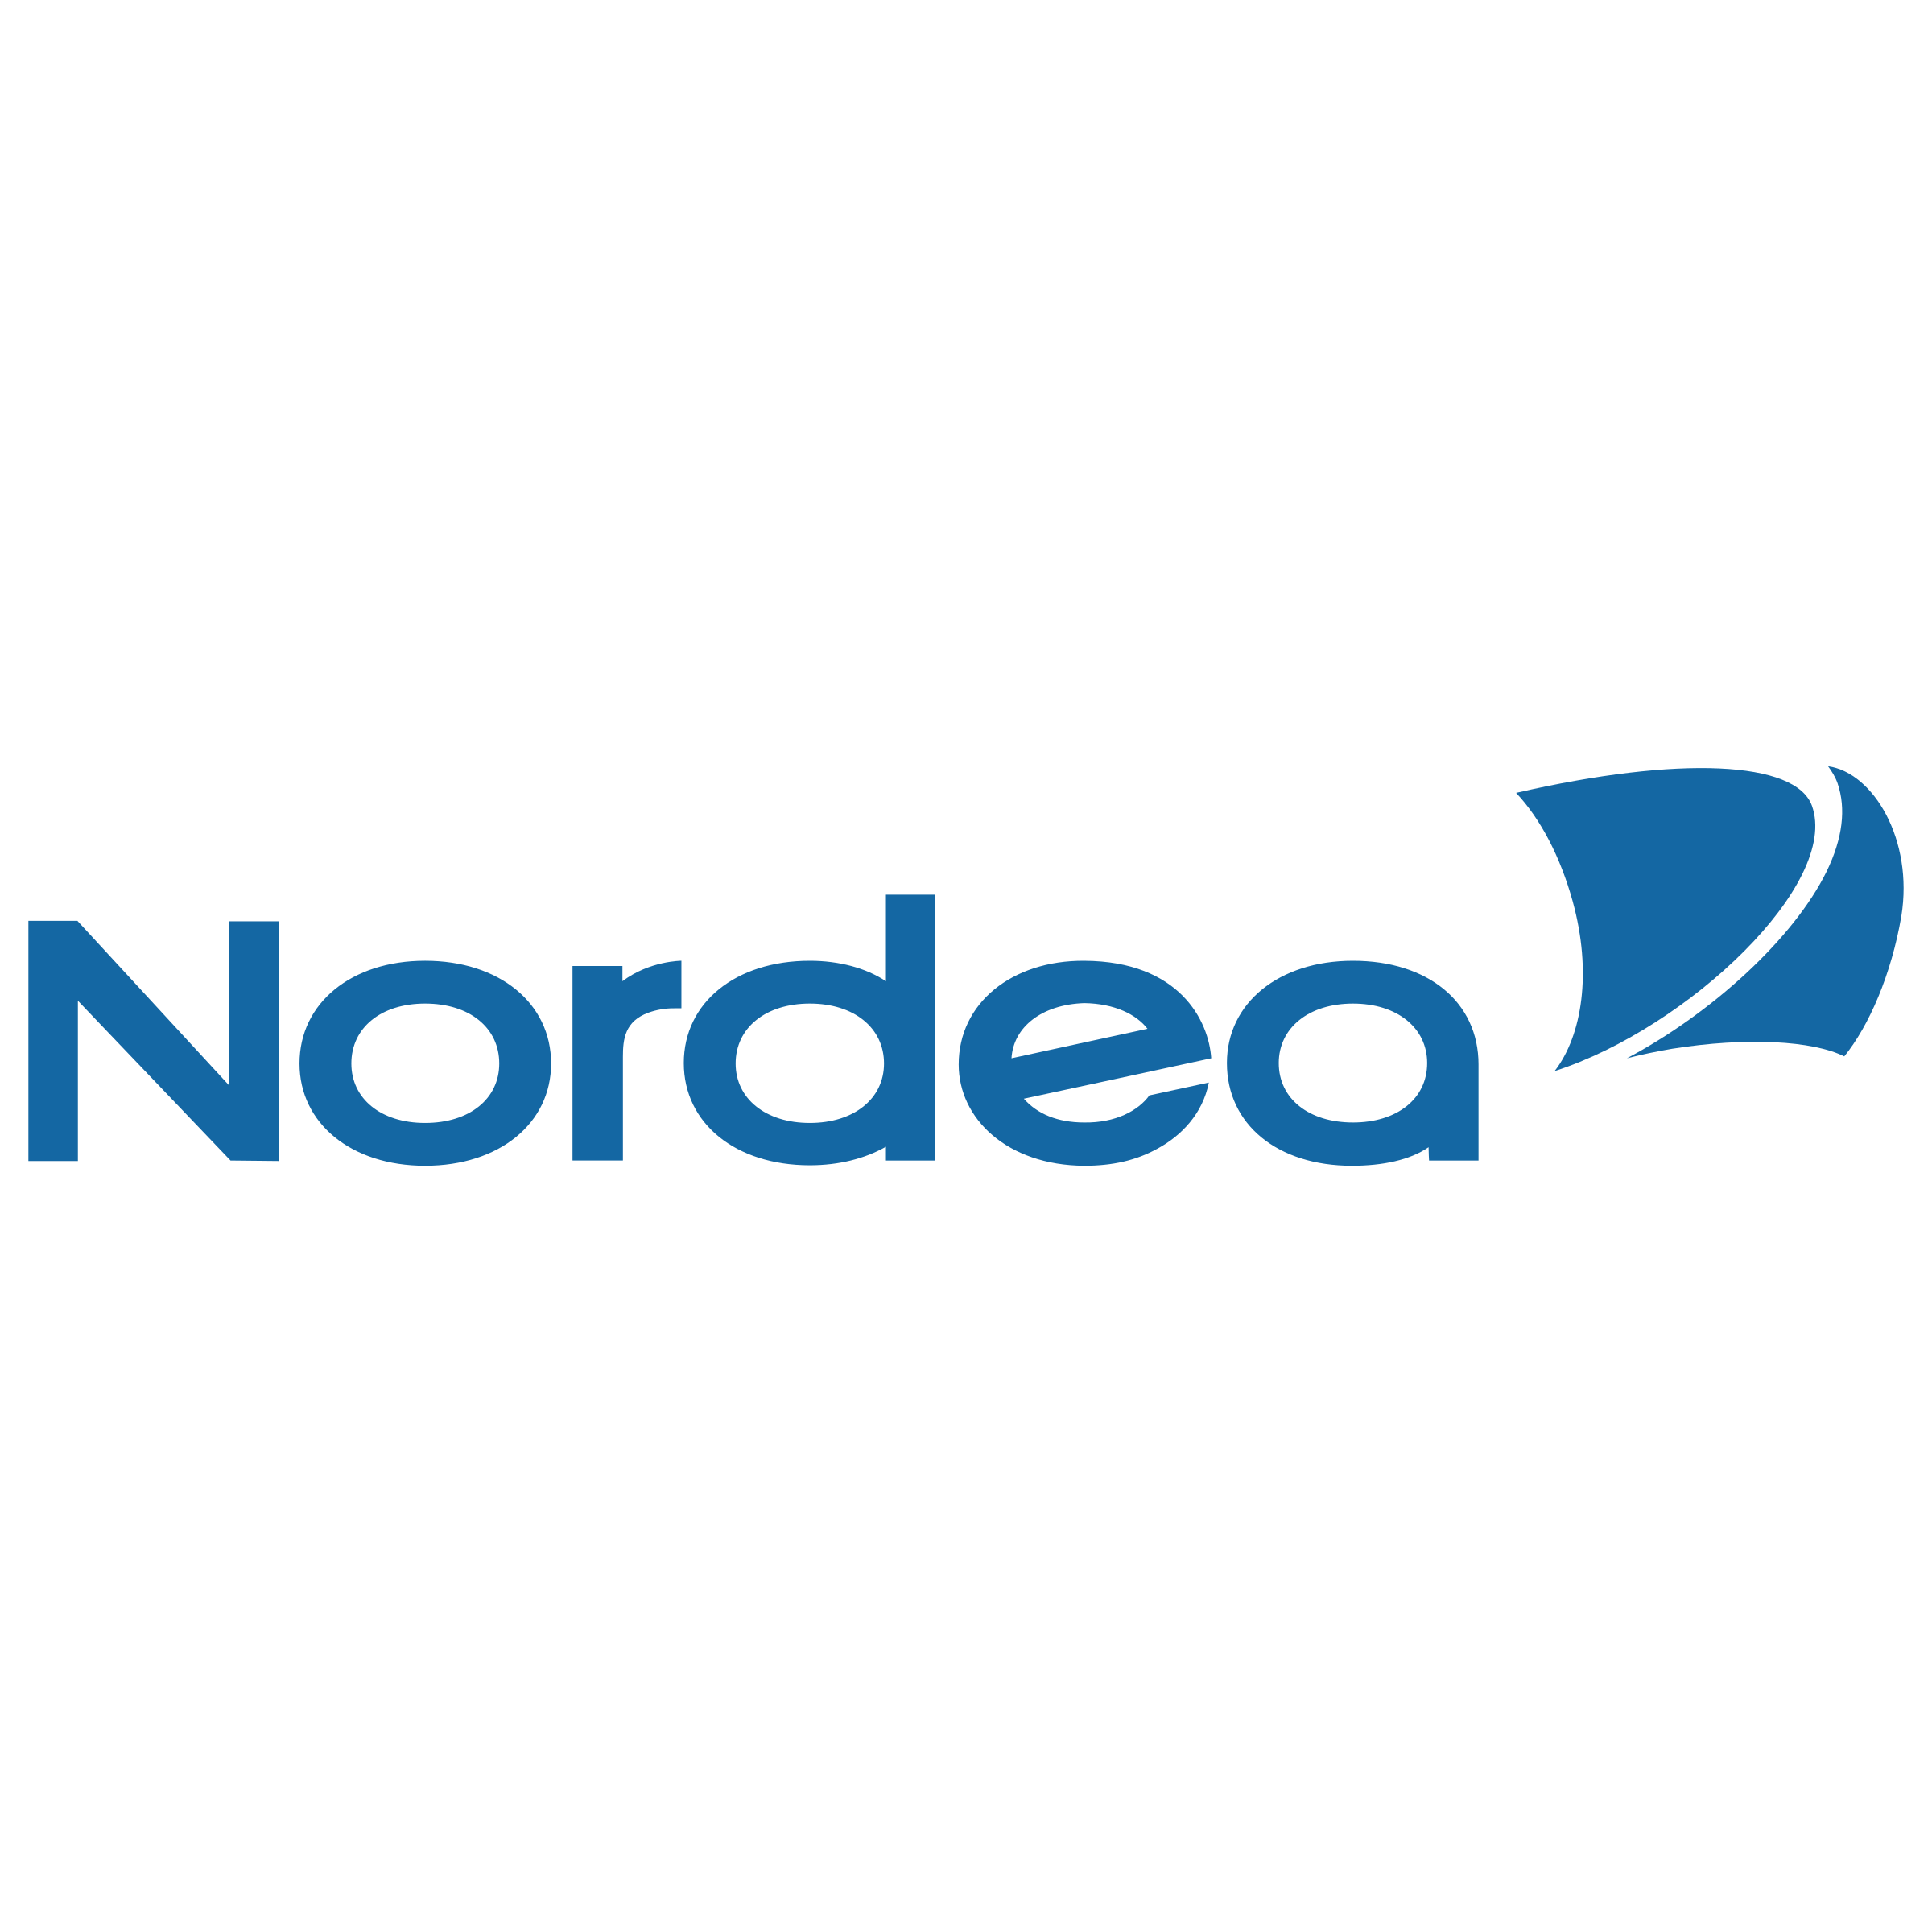 nordea-logo-transparent